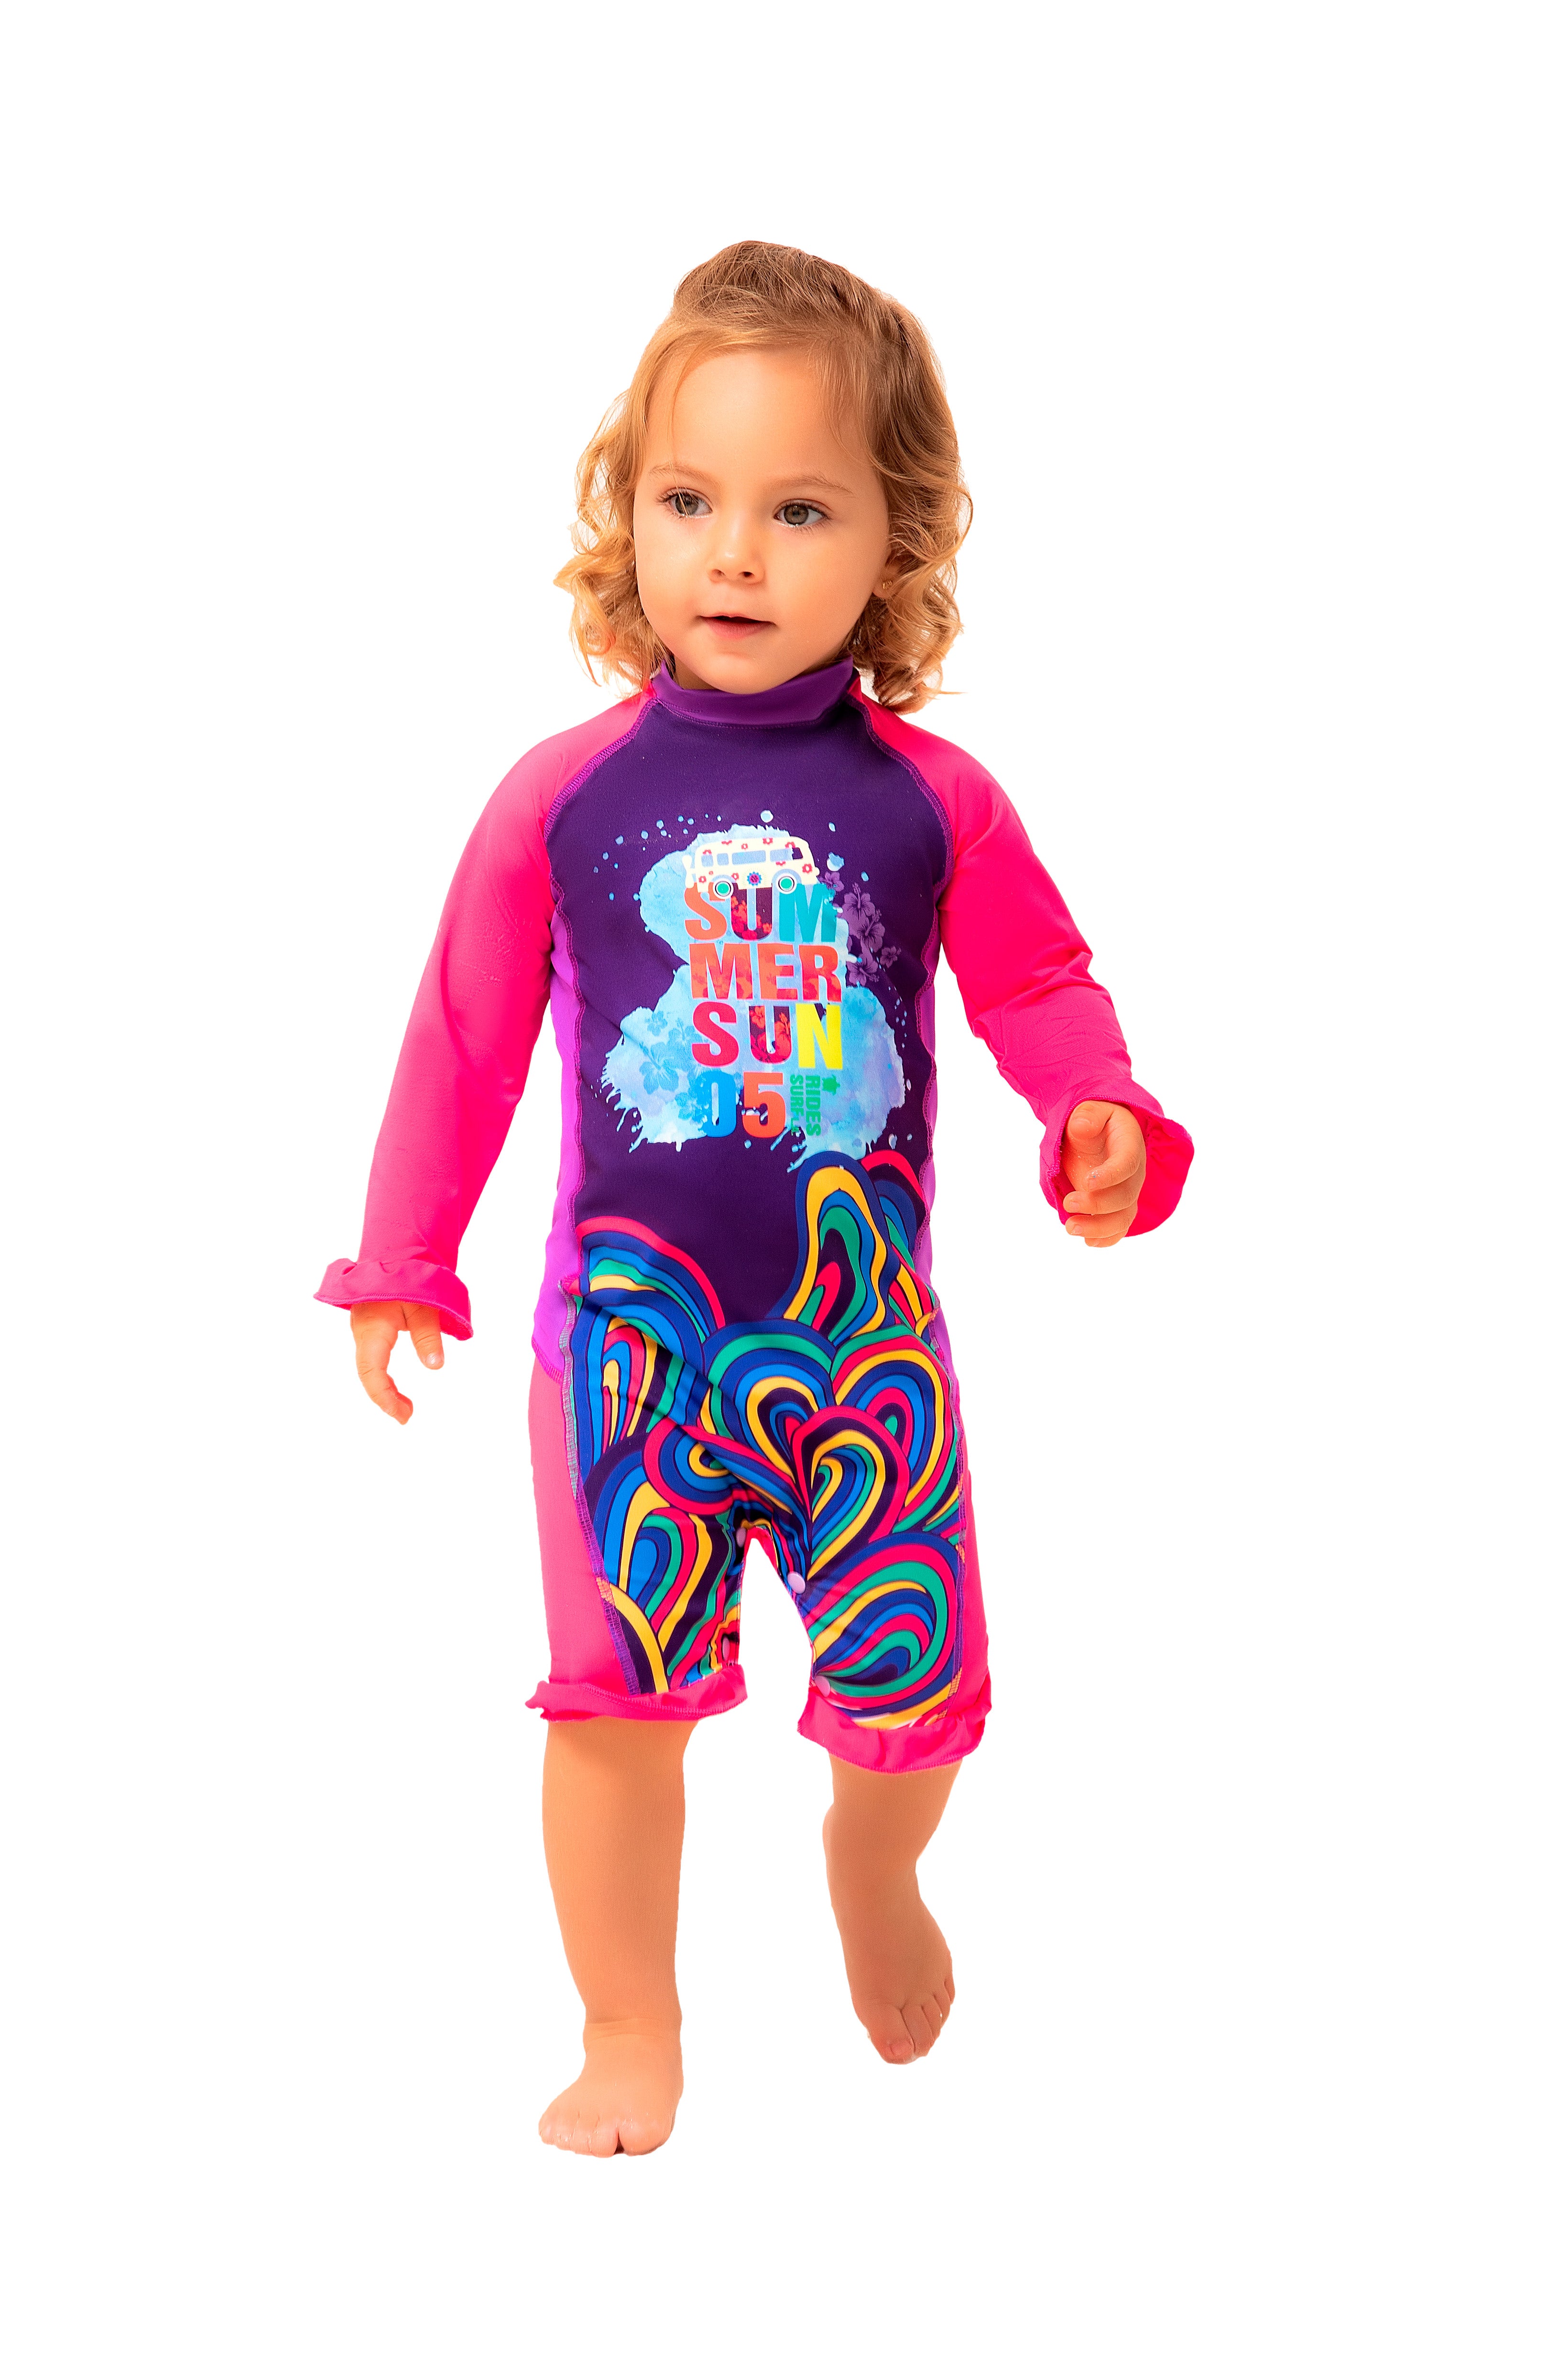 Vestido de baño enterizo manga larga para bebé multicolor con estampado sol de verano / Ref 413